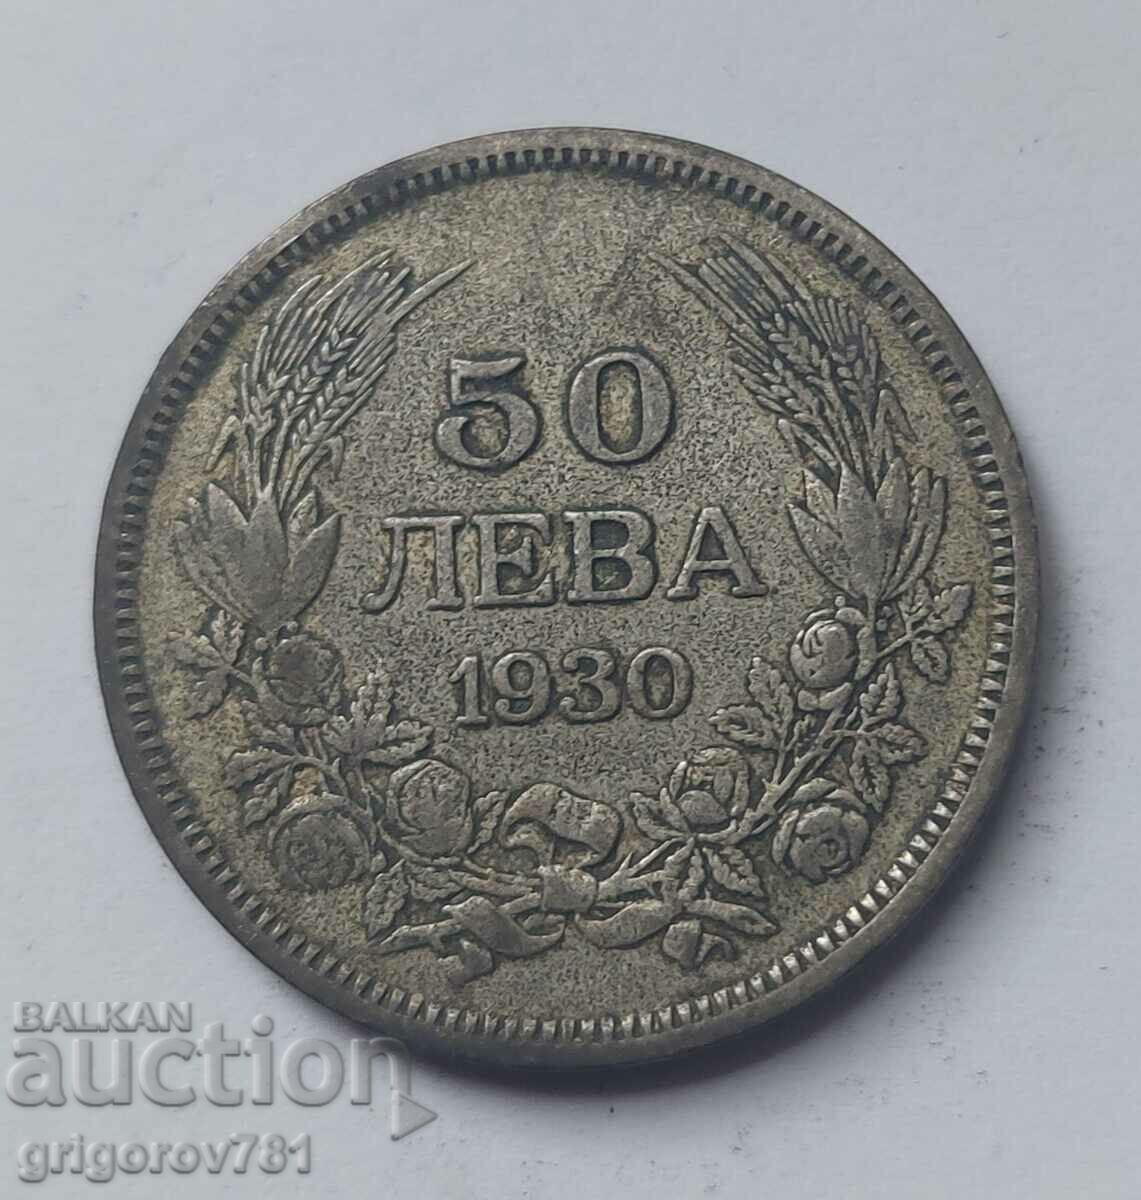 50 leva silver Bulgaria 1930 - silver coin #33